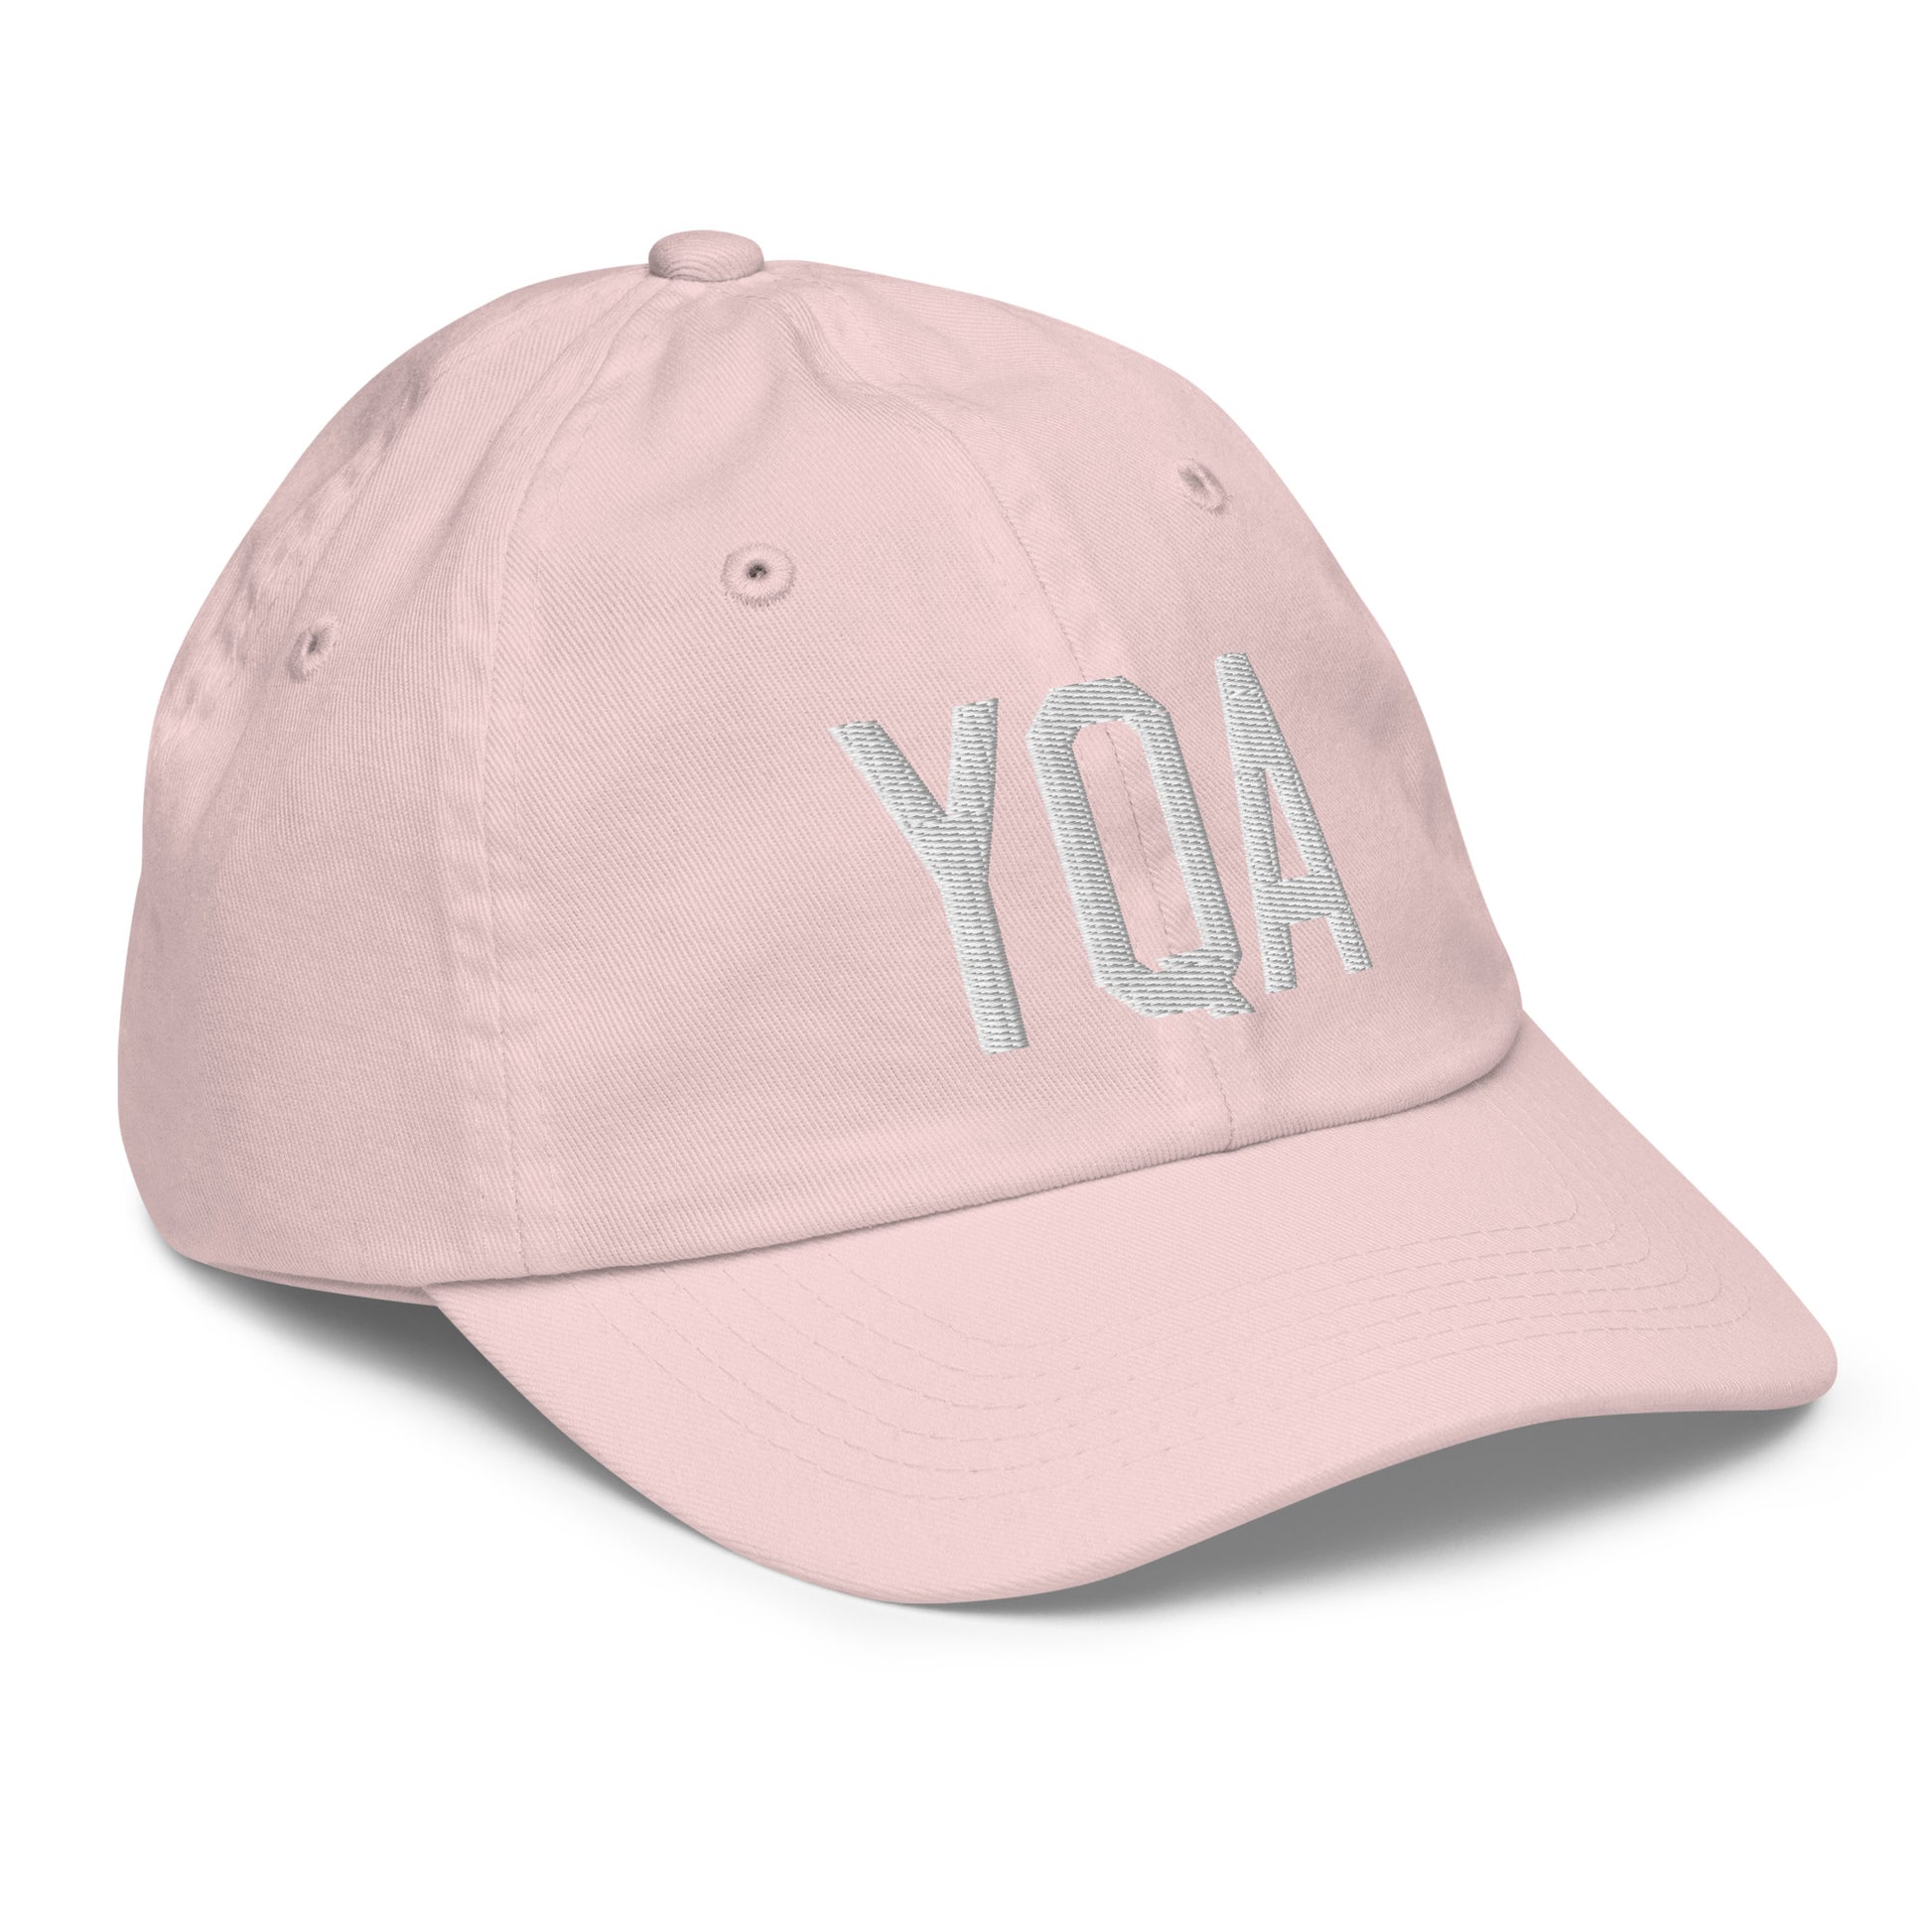 Airport Code Kid's Baseball Cap - White • YQA Muskoka • YHM Designs - Image 32